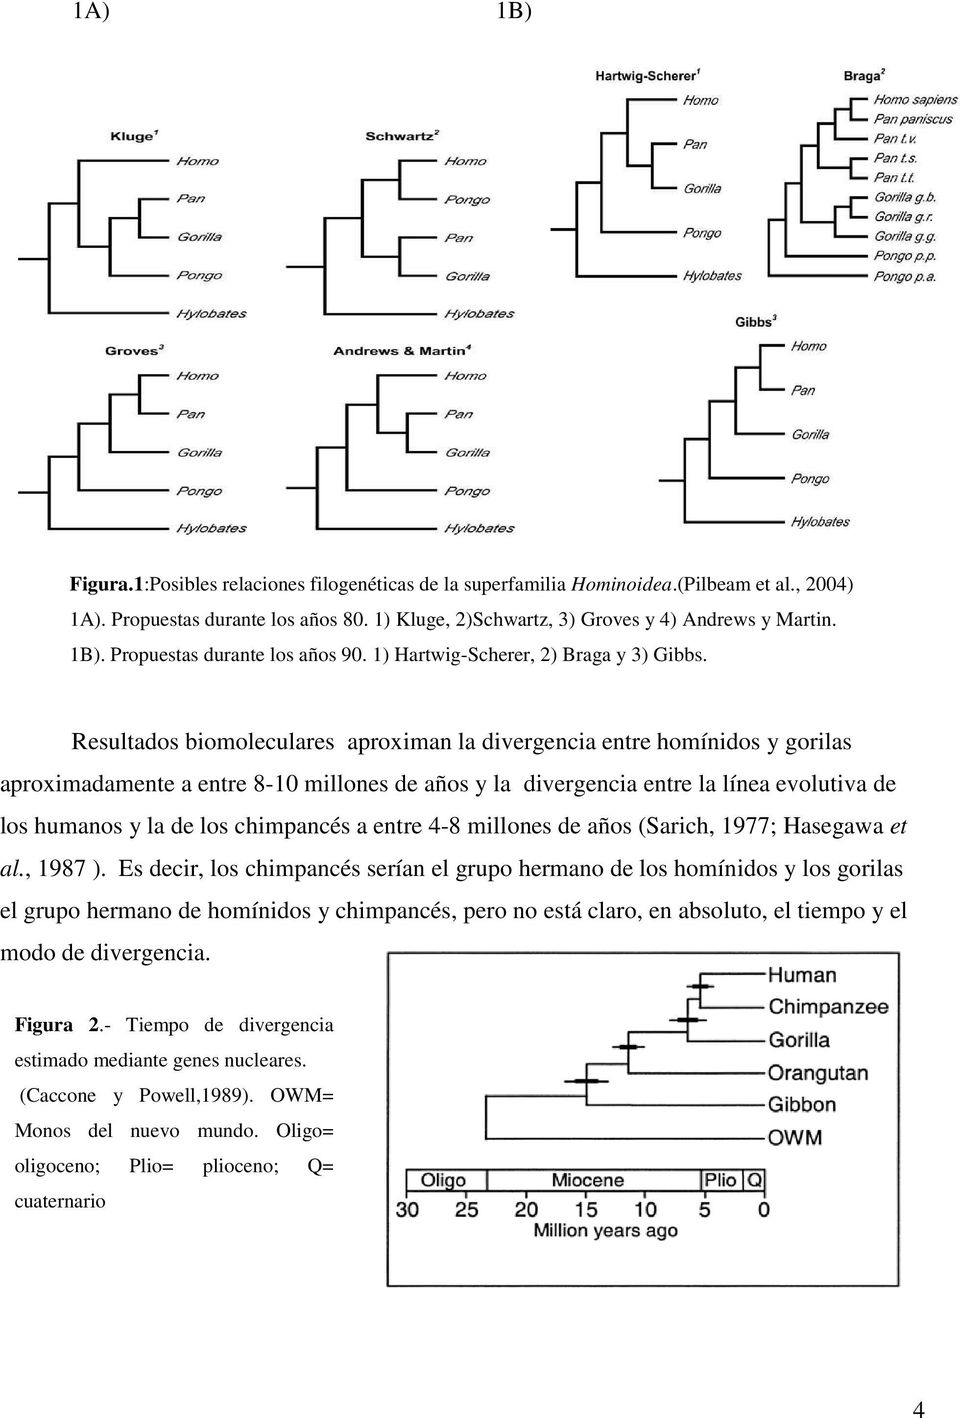 Resultados biomoleculares aproximan la divergencia entre homínidos y gorilas aproximadamente a entre 8-10 millones de años y la divergencia entre la línea evolutiva de los humanos y la de los